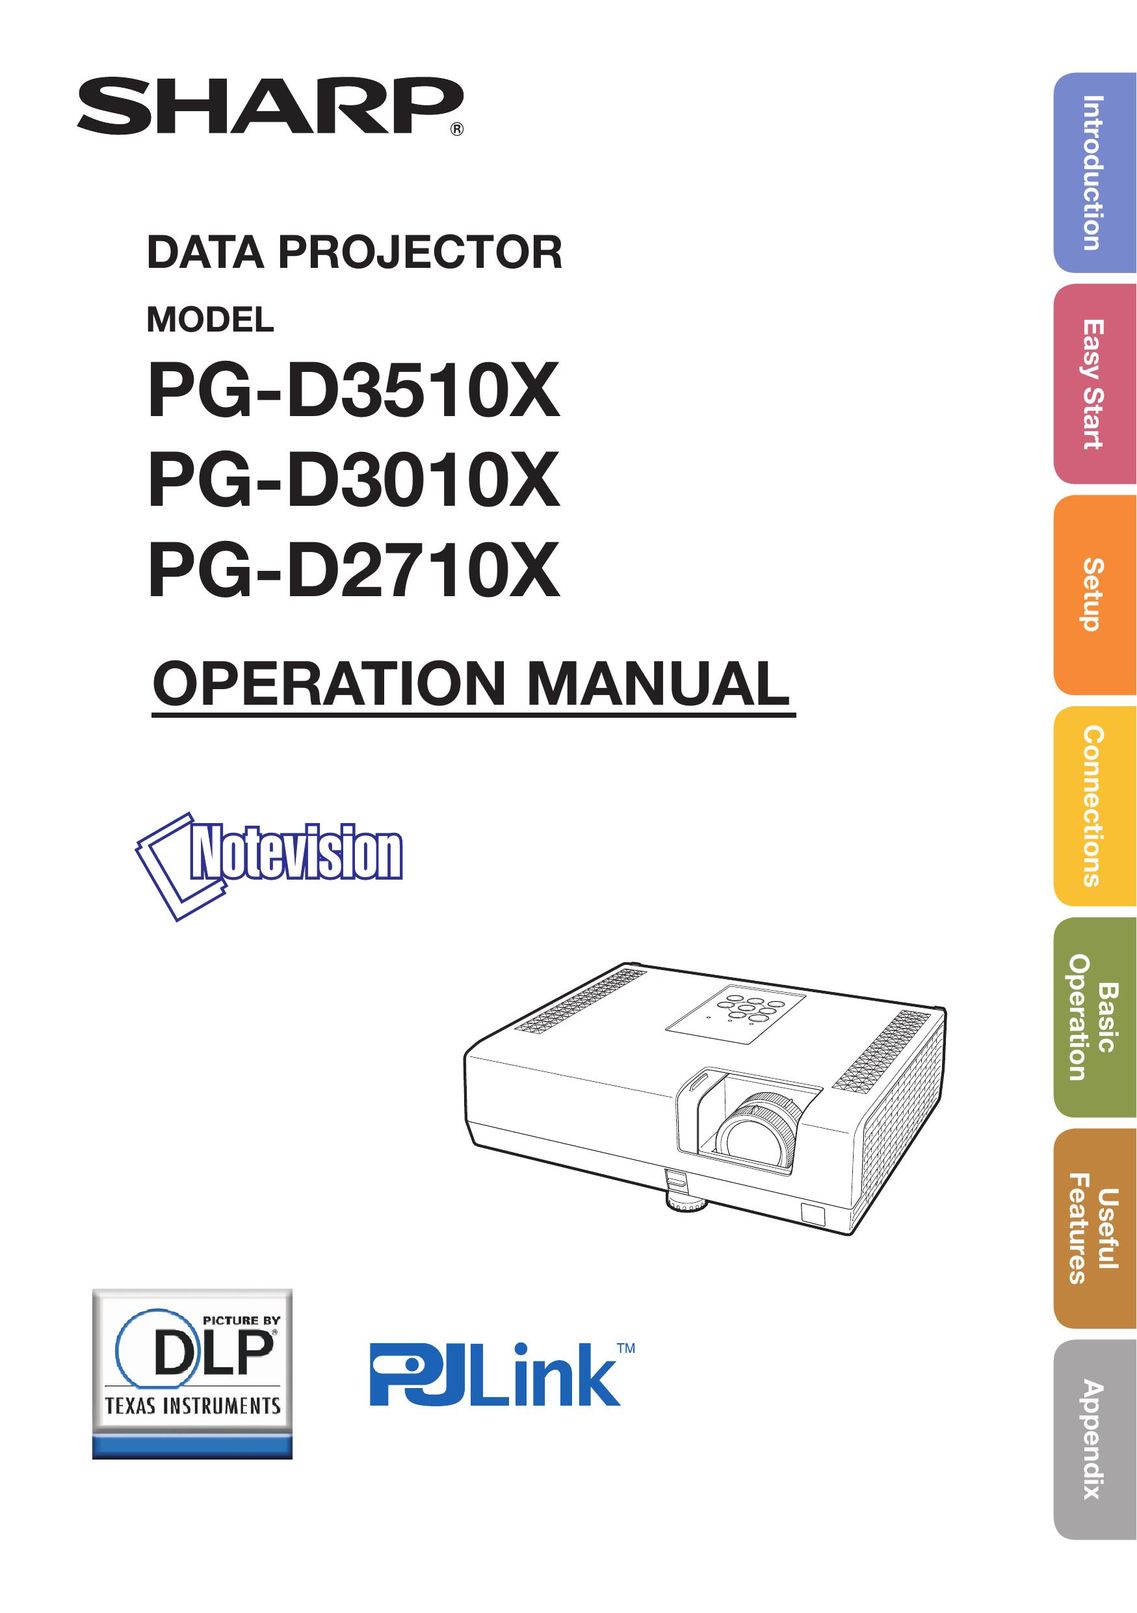 Sharp PG-D3510X Projector User Manual